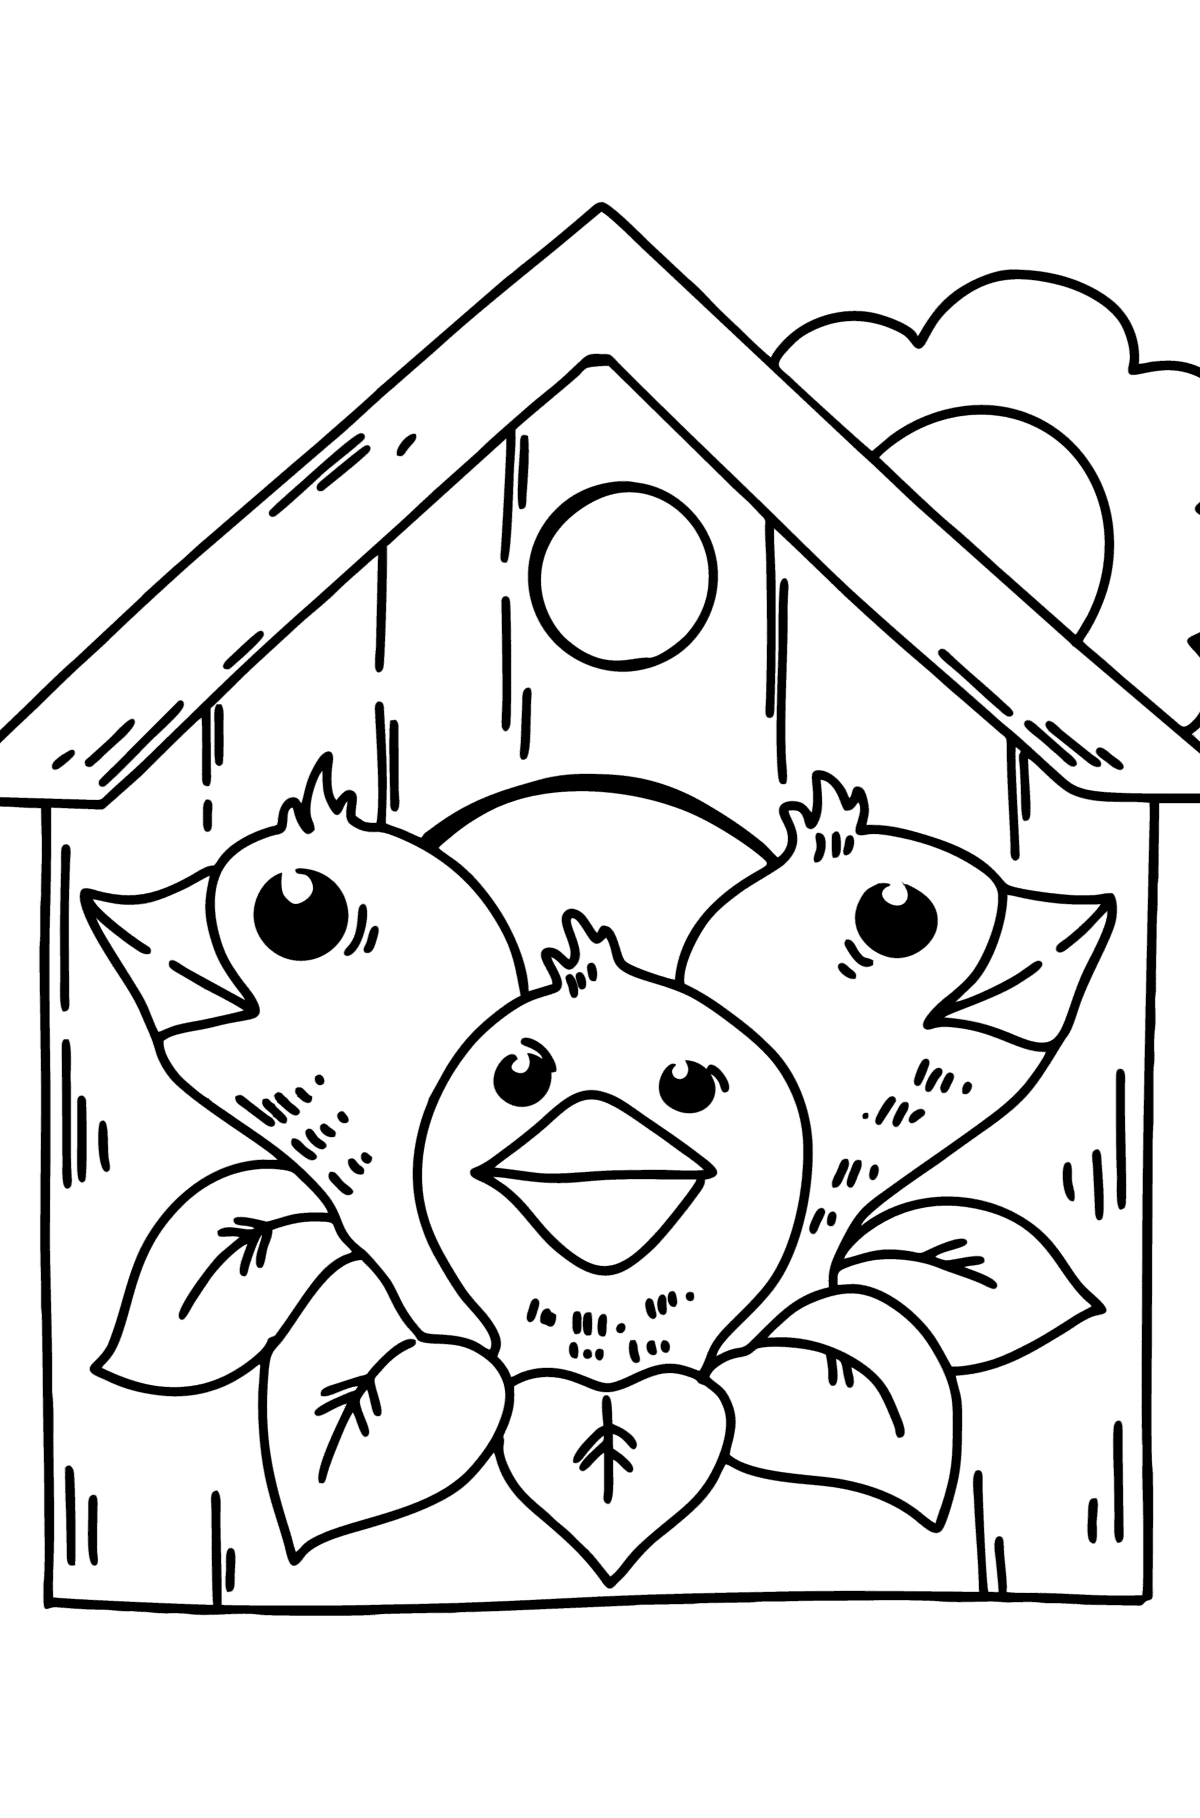 Desenho para colorir de Chicks in a Birdhouse - Imagens para Colorir para Crianças